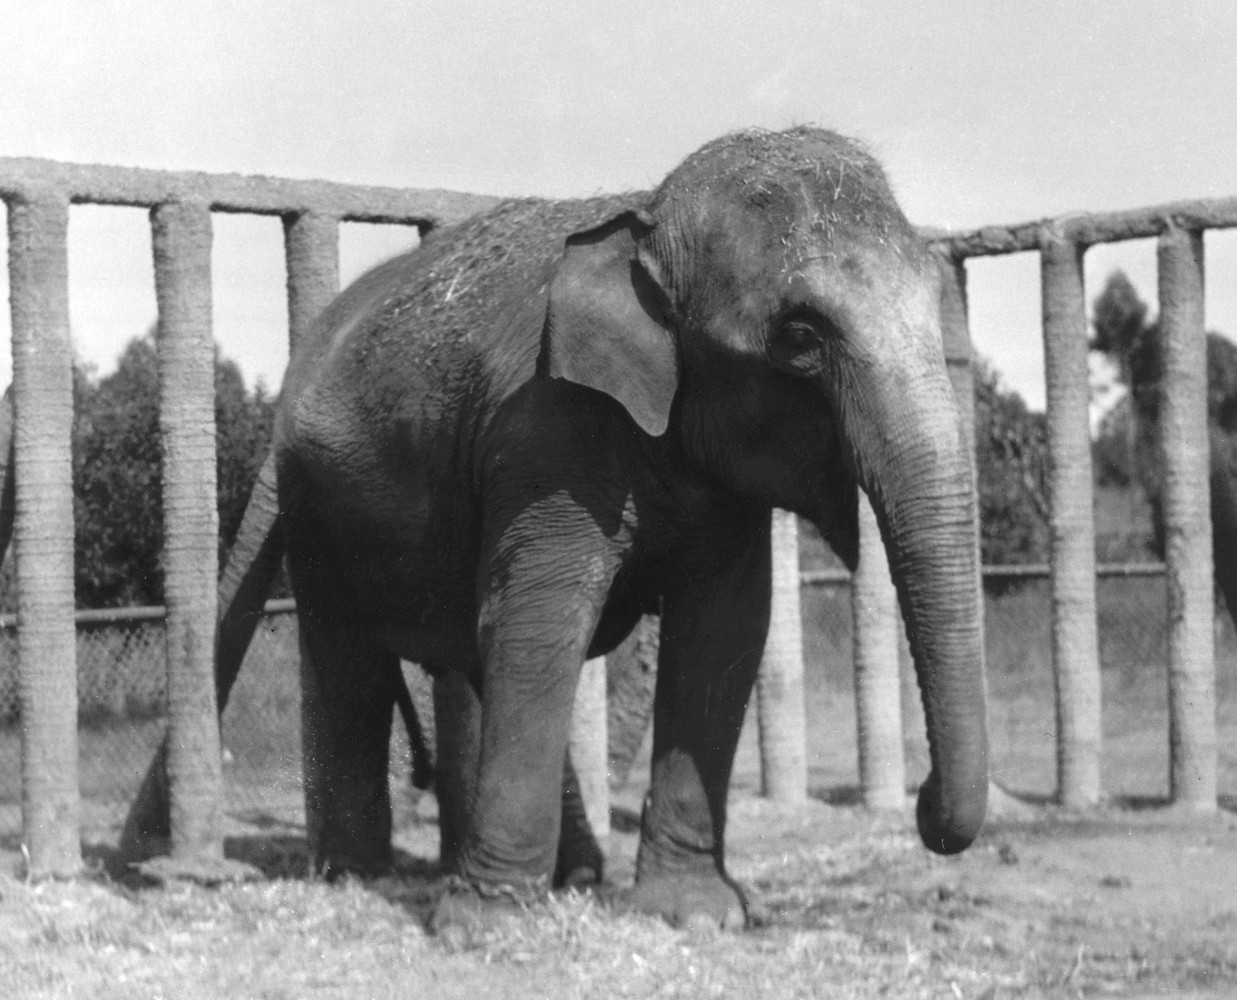 Queenie, an Asian elephant